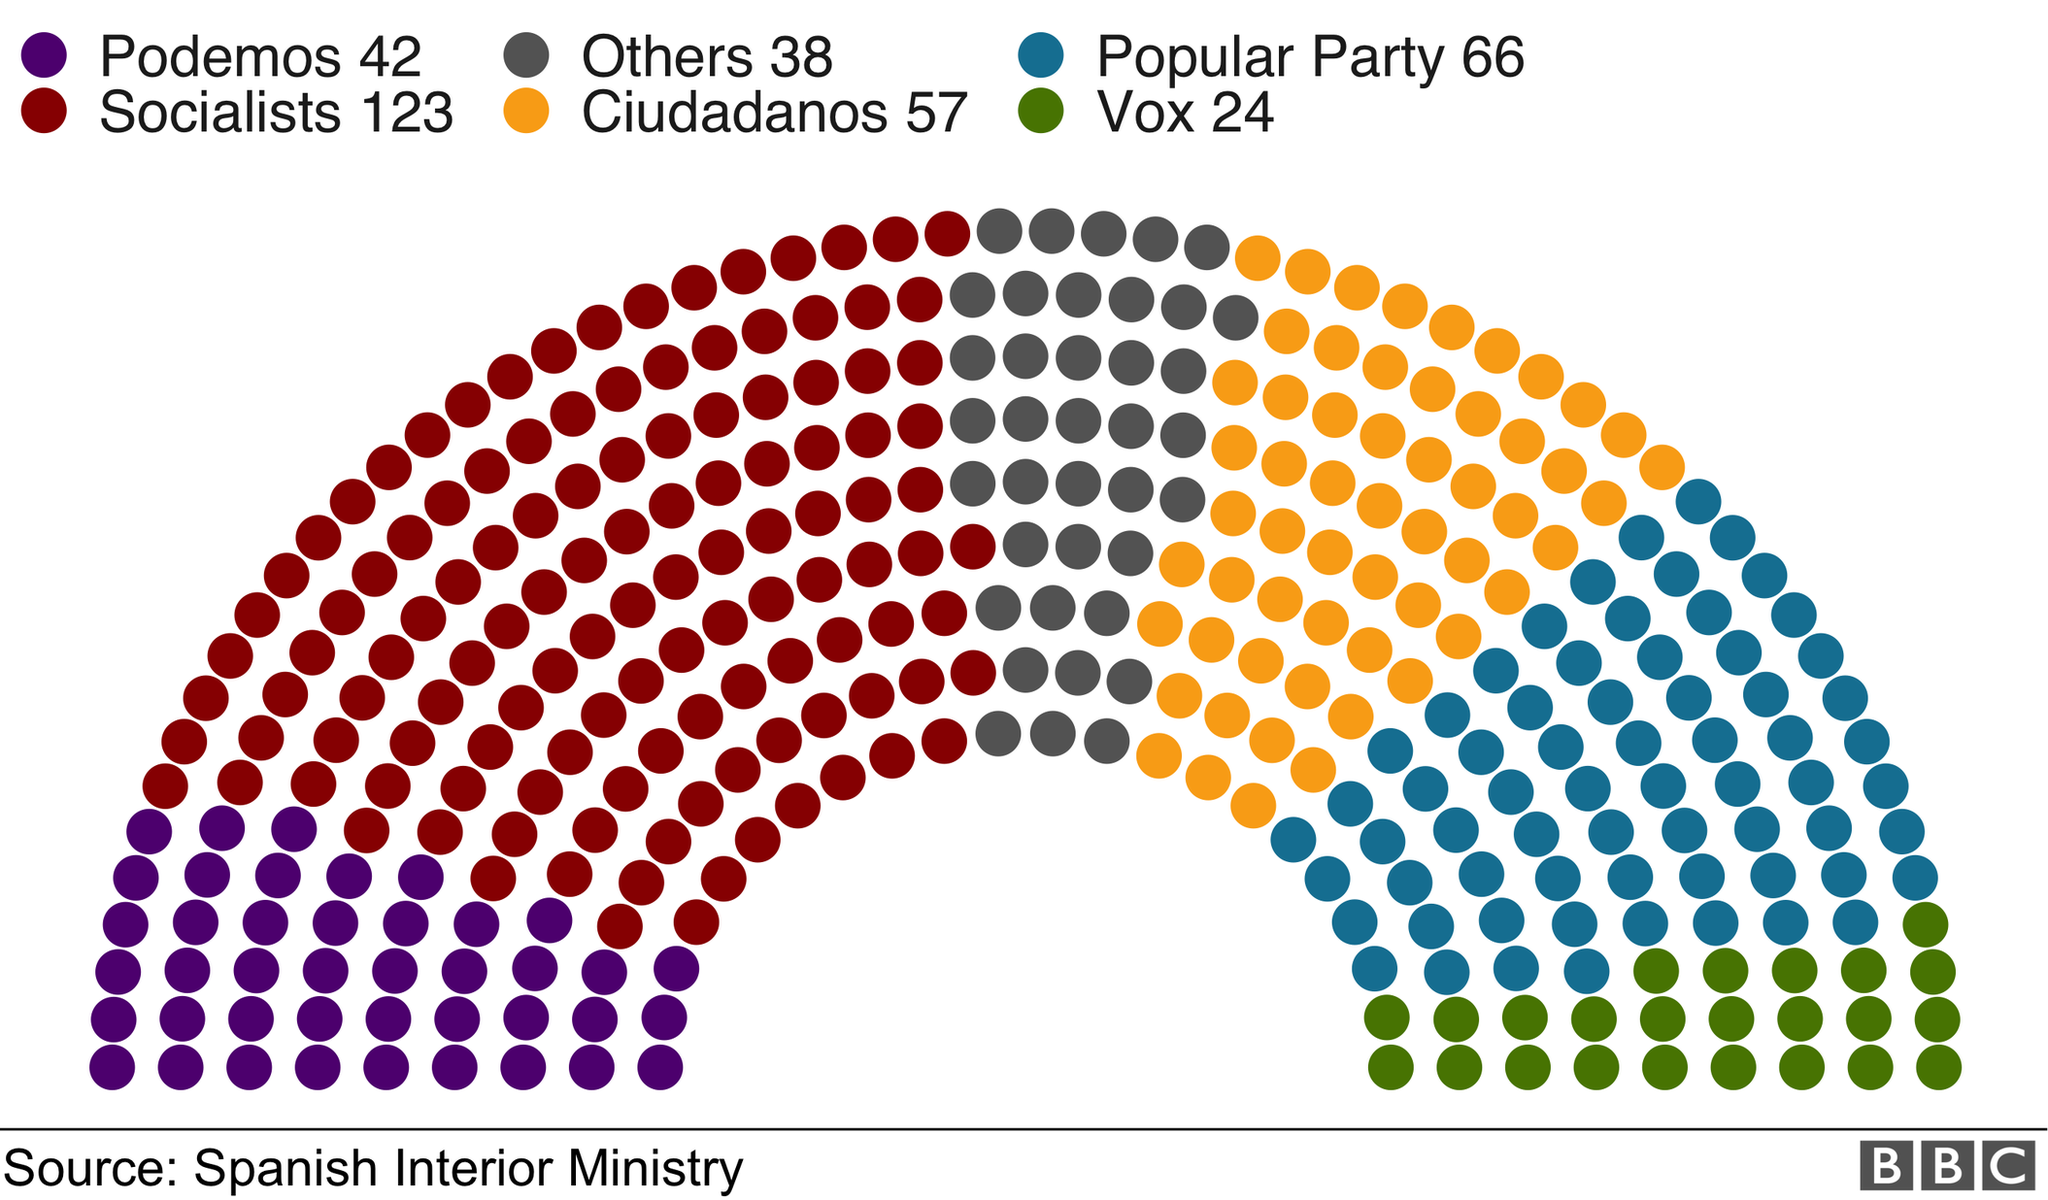 На графике показано количество мест в парламенте в формате полукруга с цветовой кодировкой: Социалисты 123, Народная партия 66, Ciudadanos 57, Podemos 42, Vox 24, Others 38